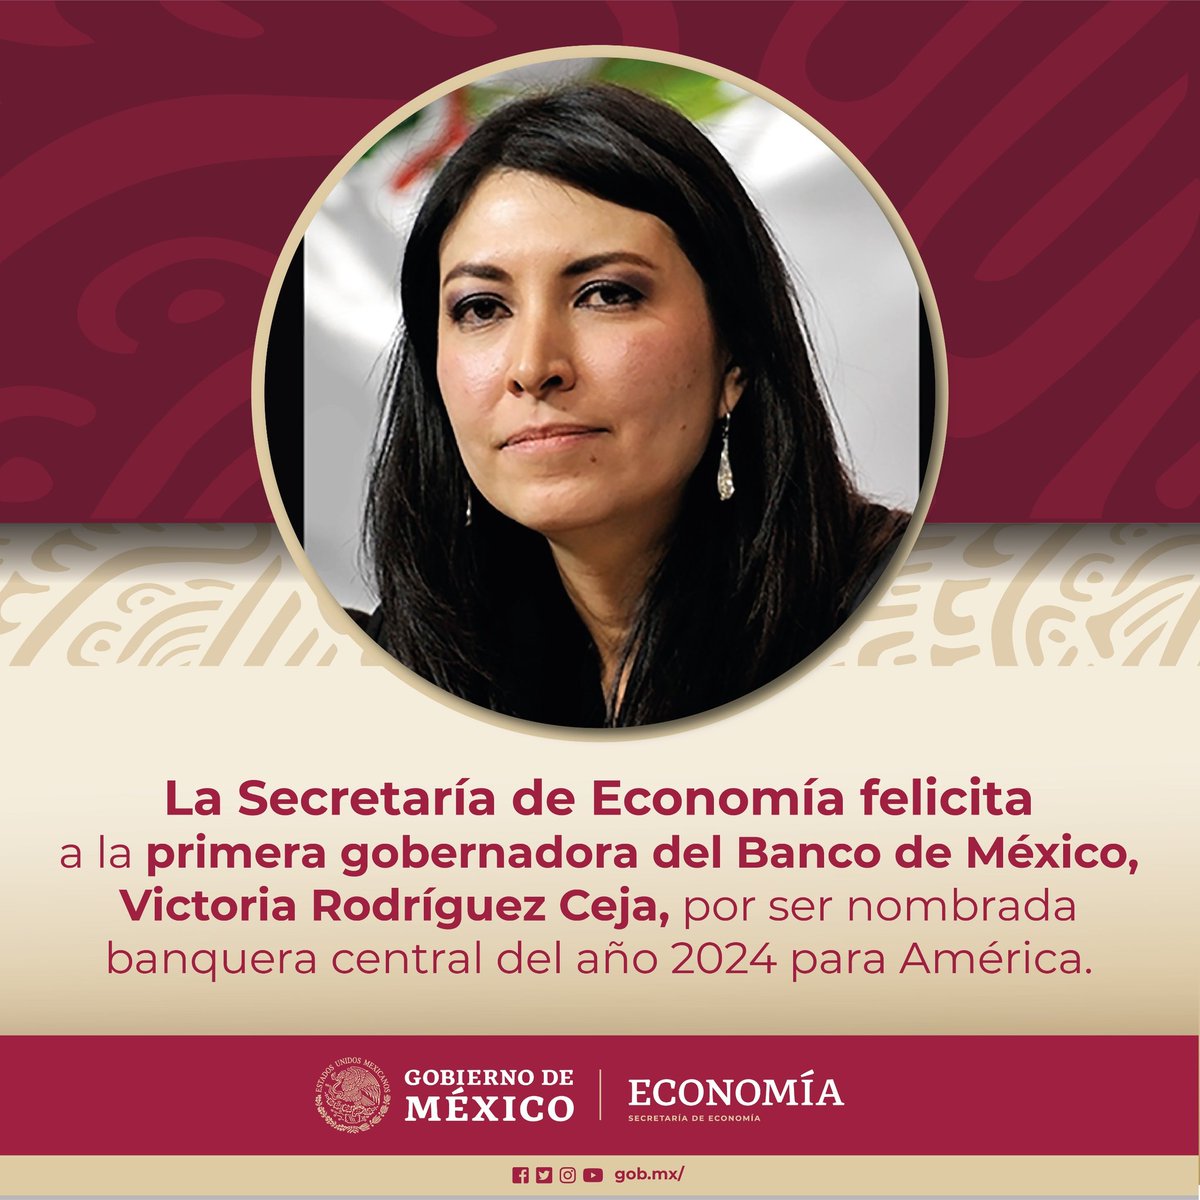 La Secretaría de Economía felicita a la primera gobernadora del #BancodeMéxico, Victoria Rodríguez Ceja, por su merecido nombramiento como banquera central del año 2024 para toda América.

Es también un reconocimiento para la economía y las finanzas de nuestro país que mantienen…